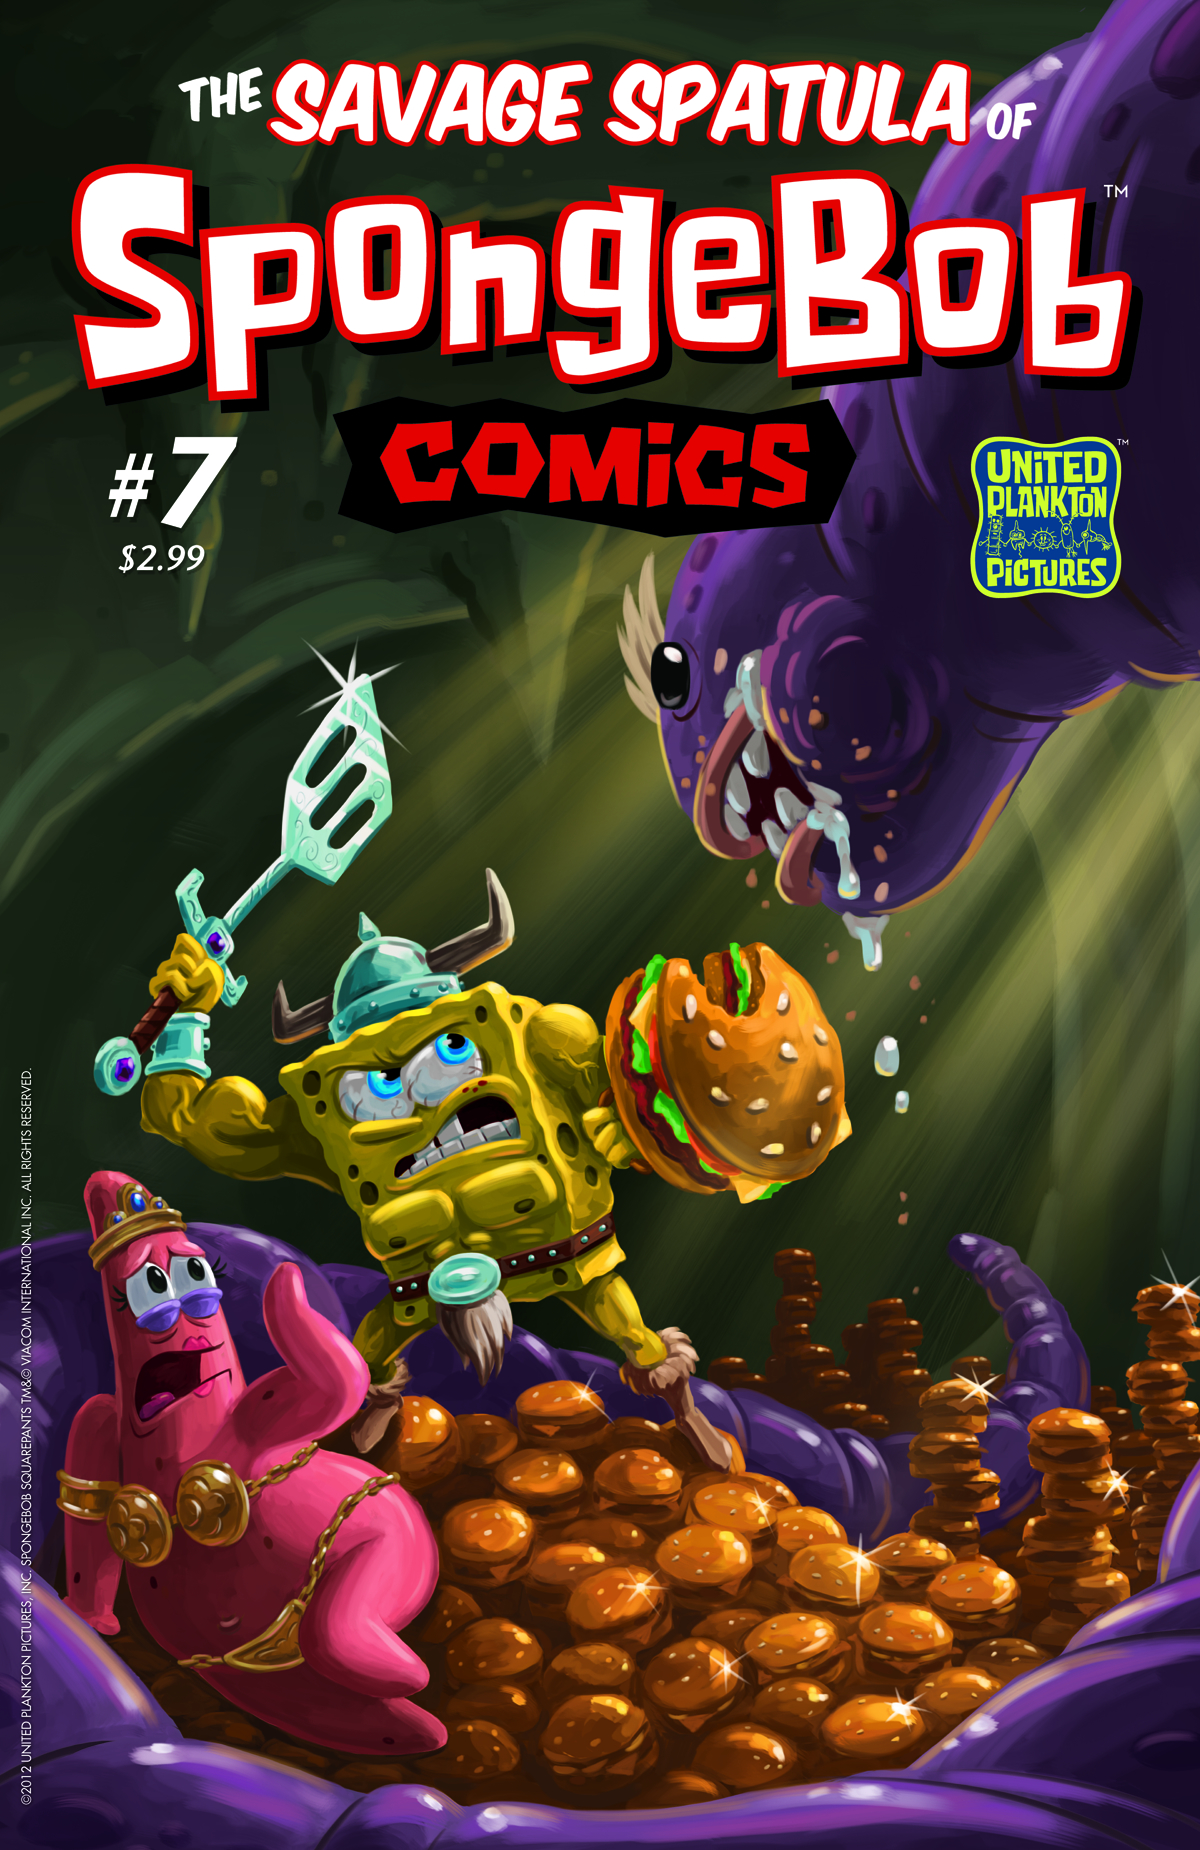 SPONGEBOB COMICS #7